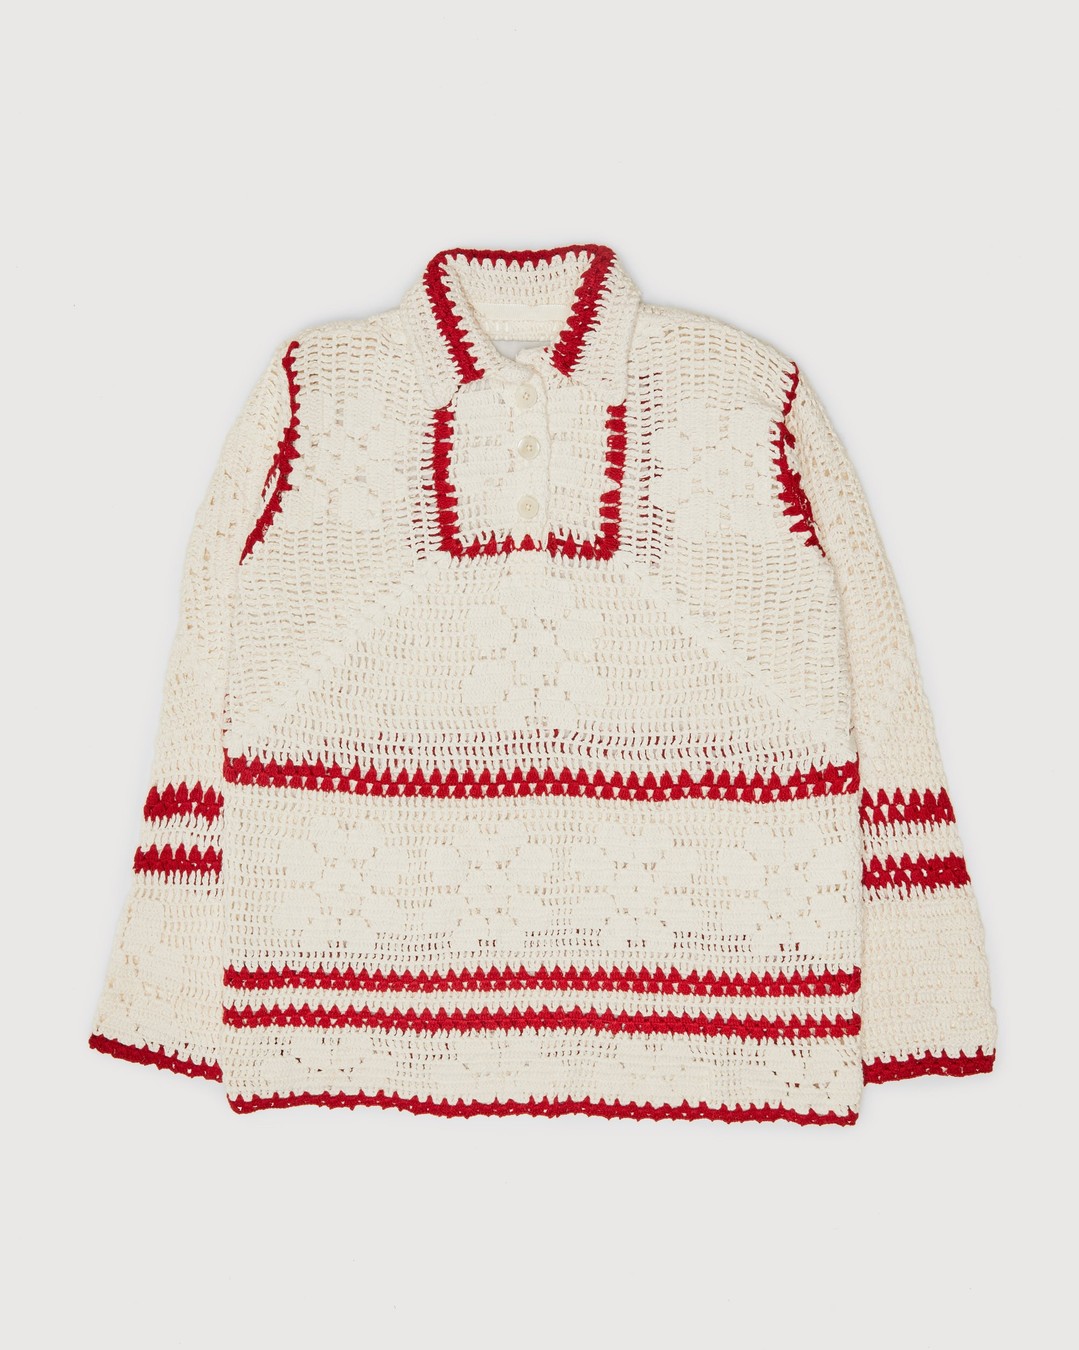 Bode – Mockneck Crochet Pullover White Red - Crewnecks - Beige - Image 1